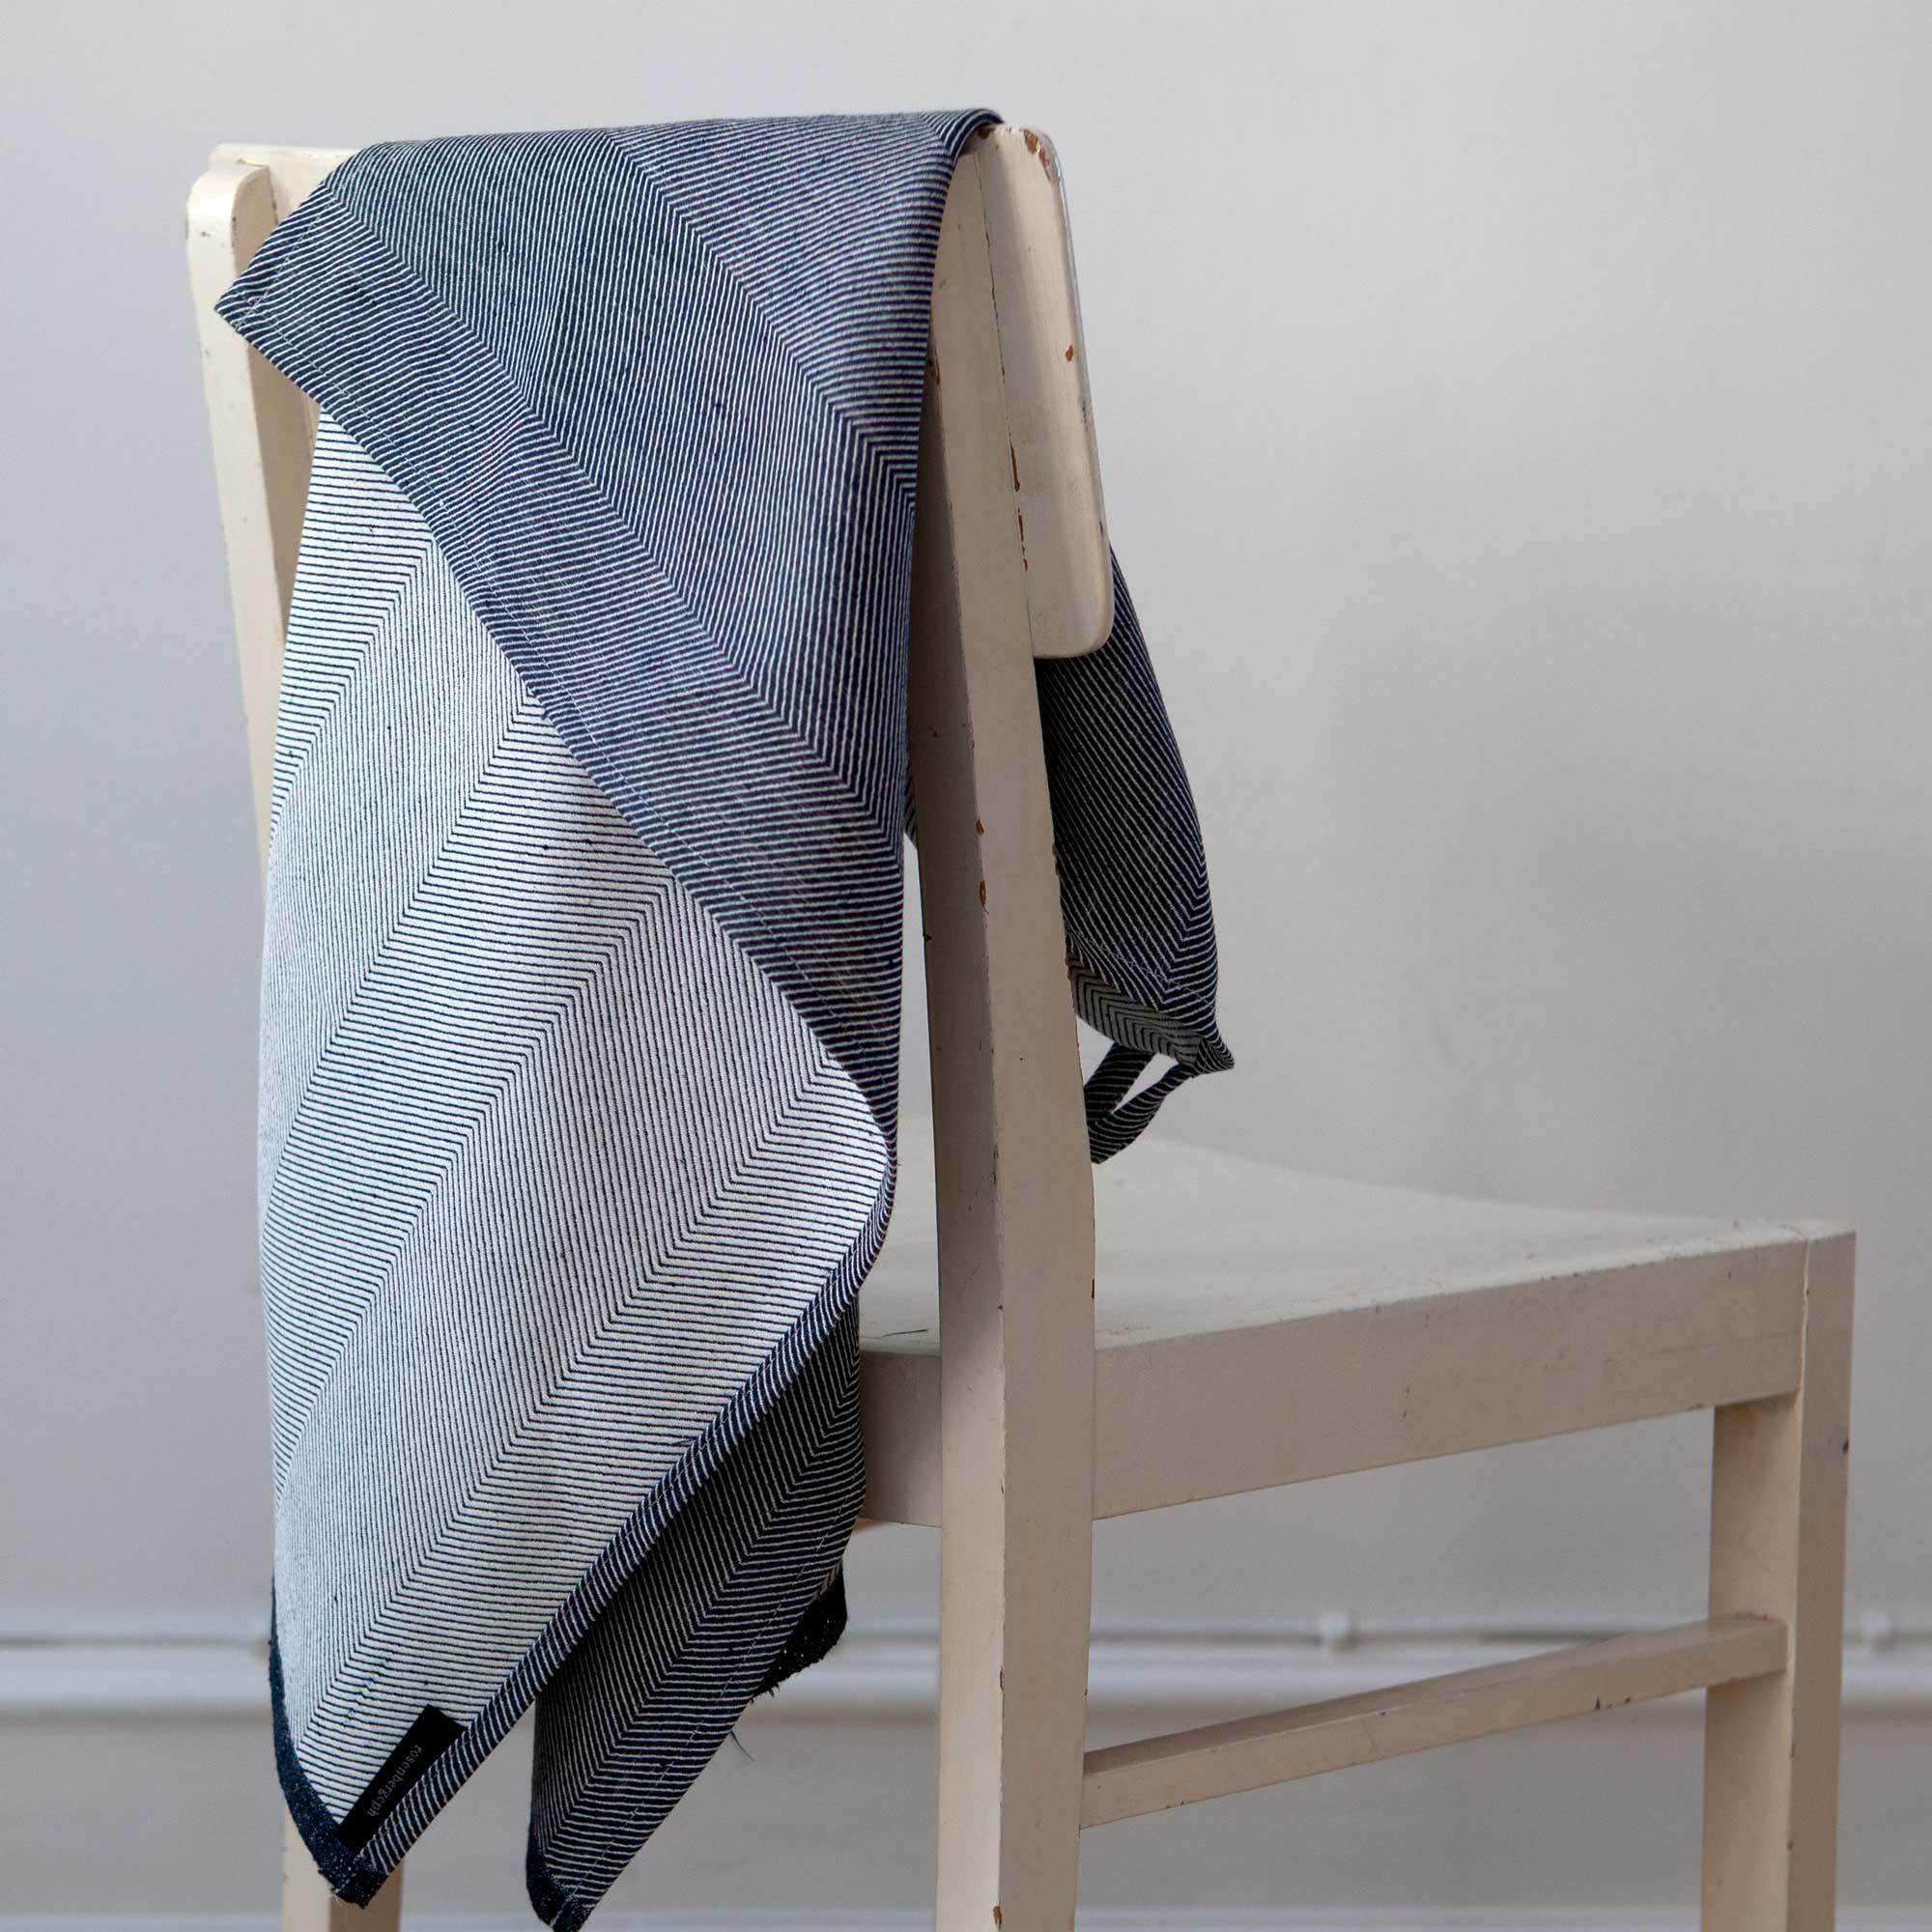 Håndklæde, Indigo, hør/bomuld, design af Anne Rosenberg, RosenbergCph